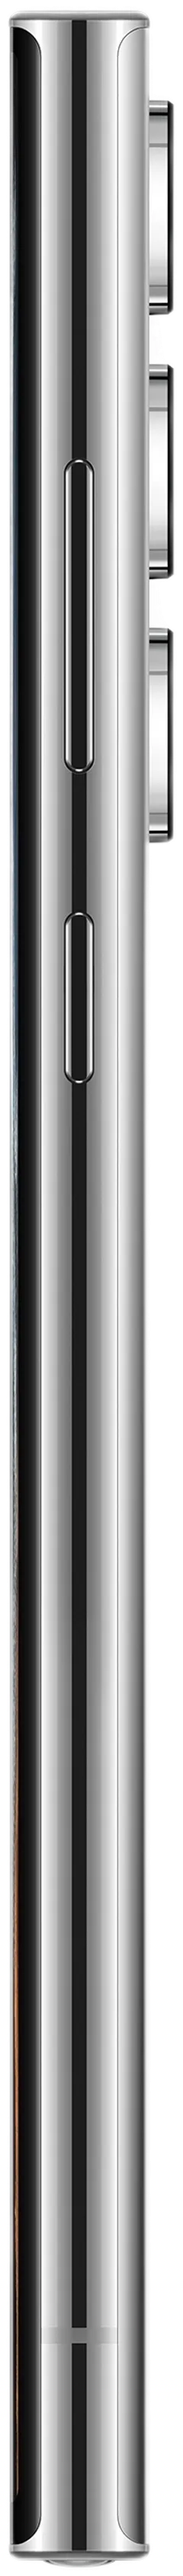 Samsung Galaxy S22 Ultra 5G 128GB valkoinen älypuhelin - 8